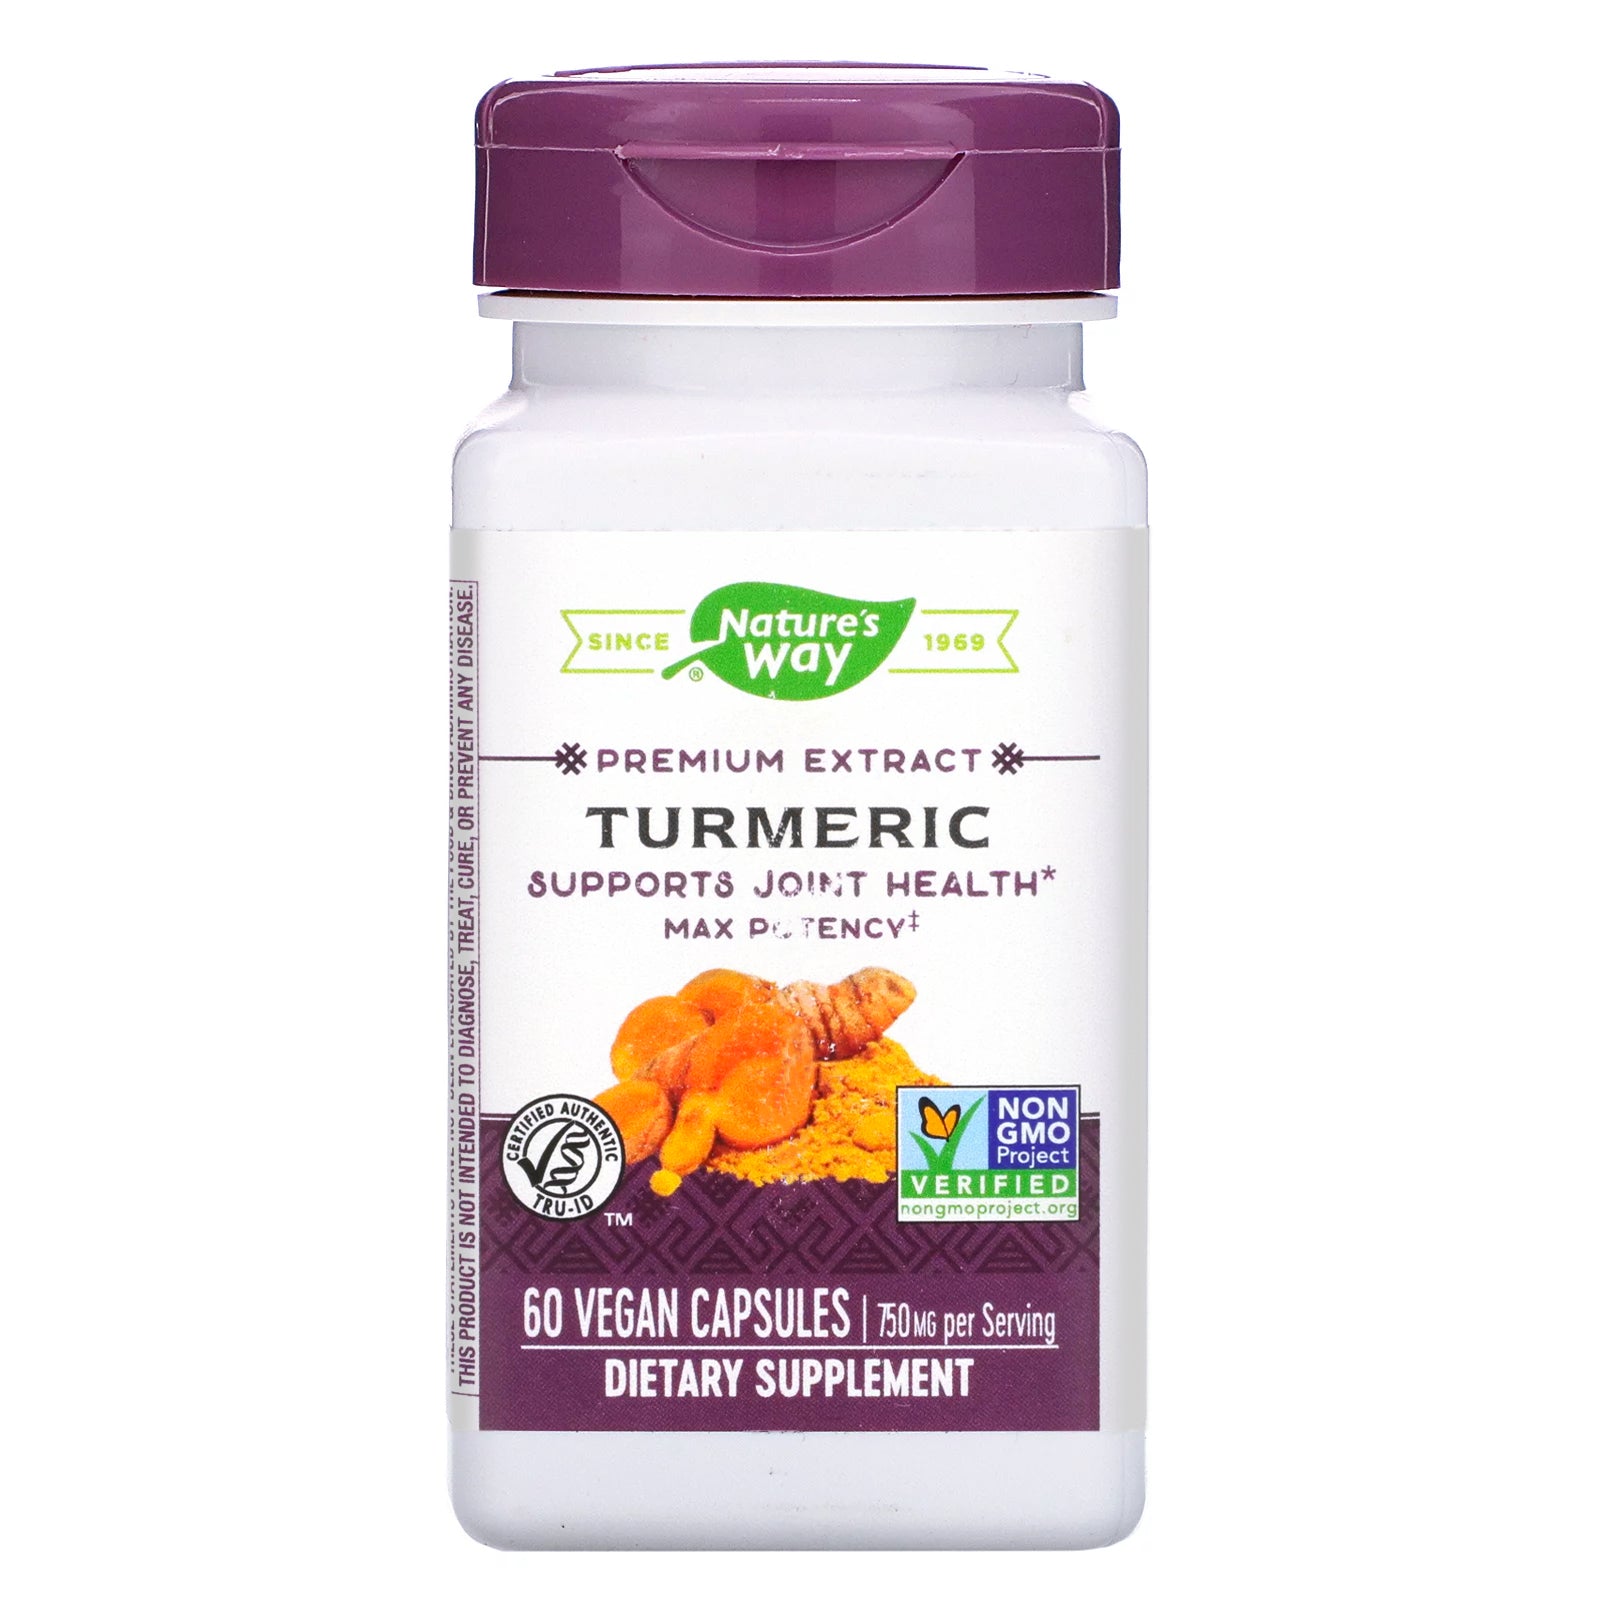 Nature's Way, Premium Extract, Turmeric, 750 mg, 60 Vegan Capsules